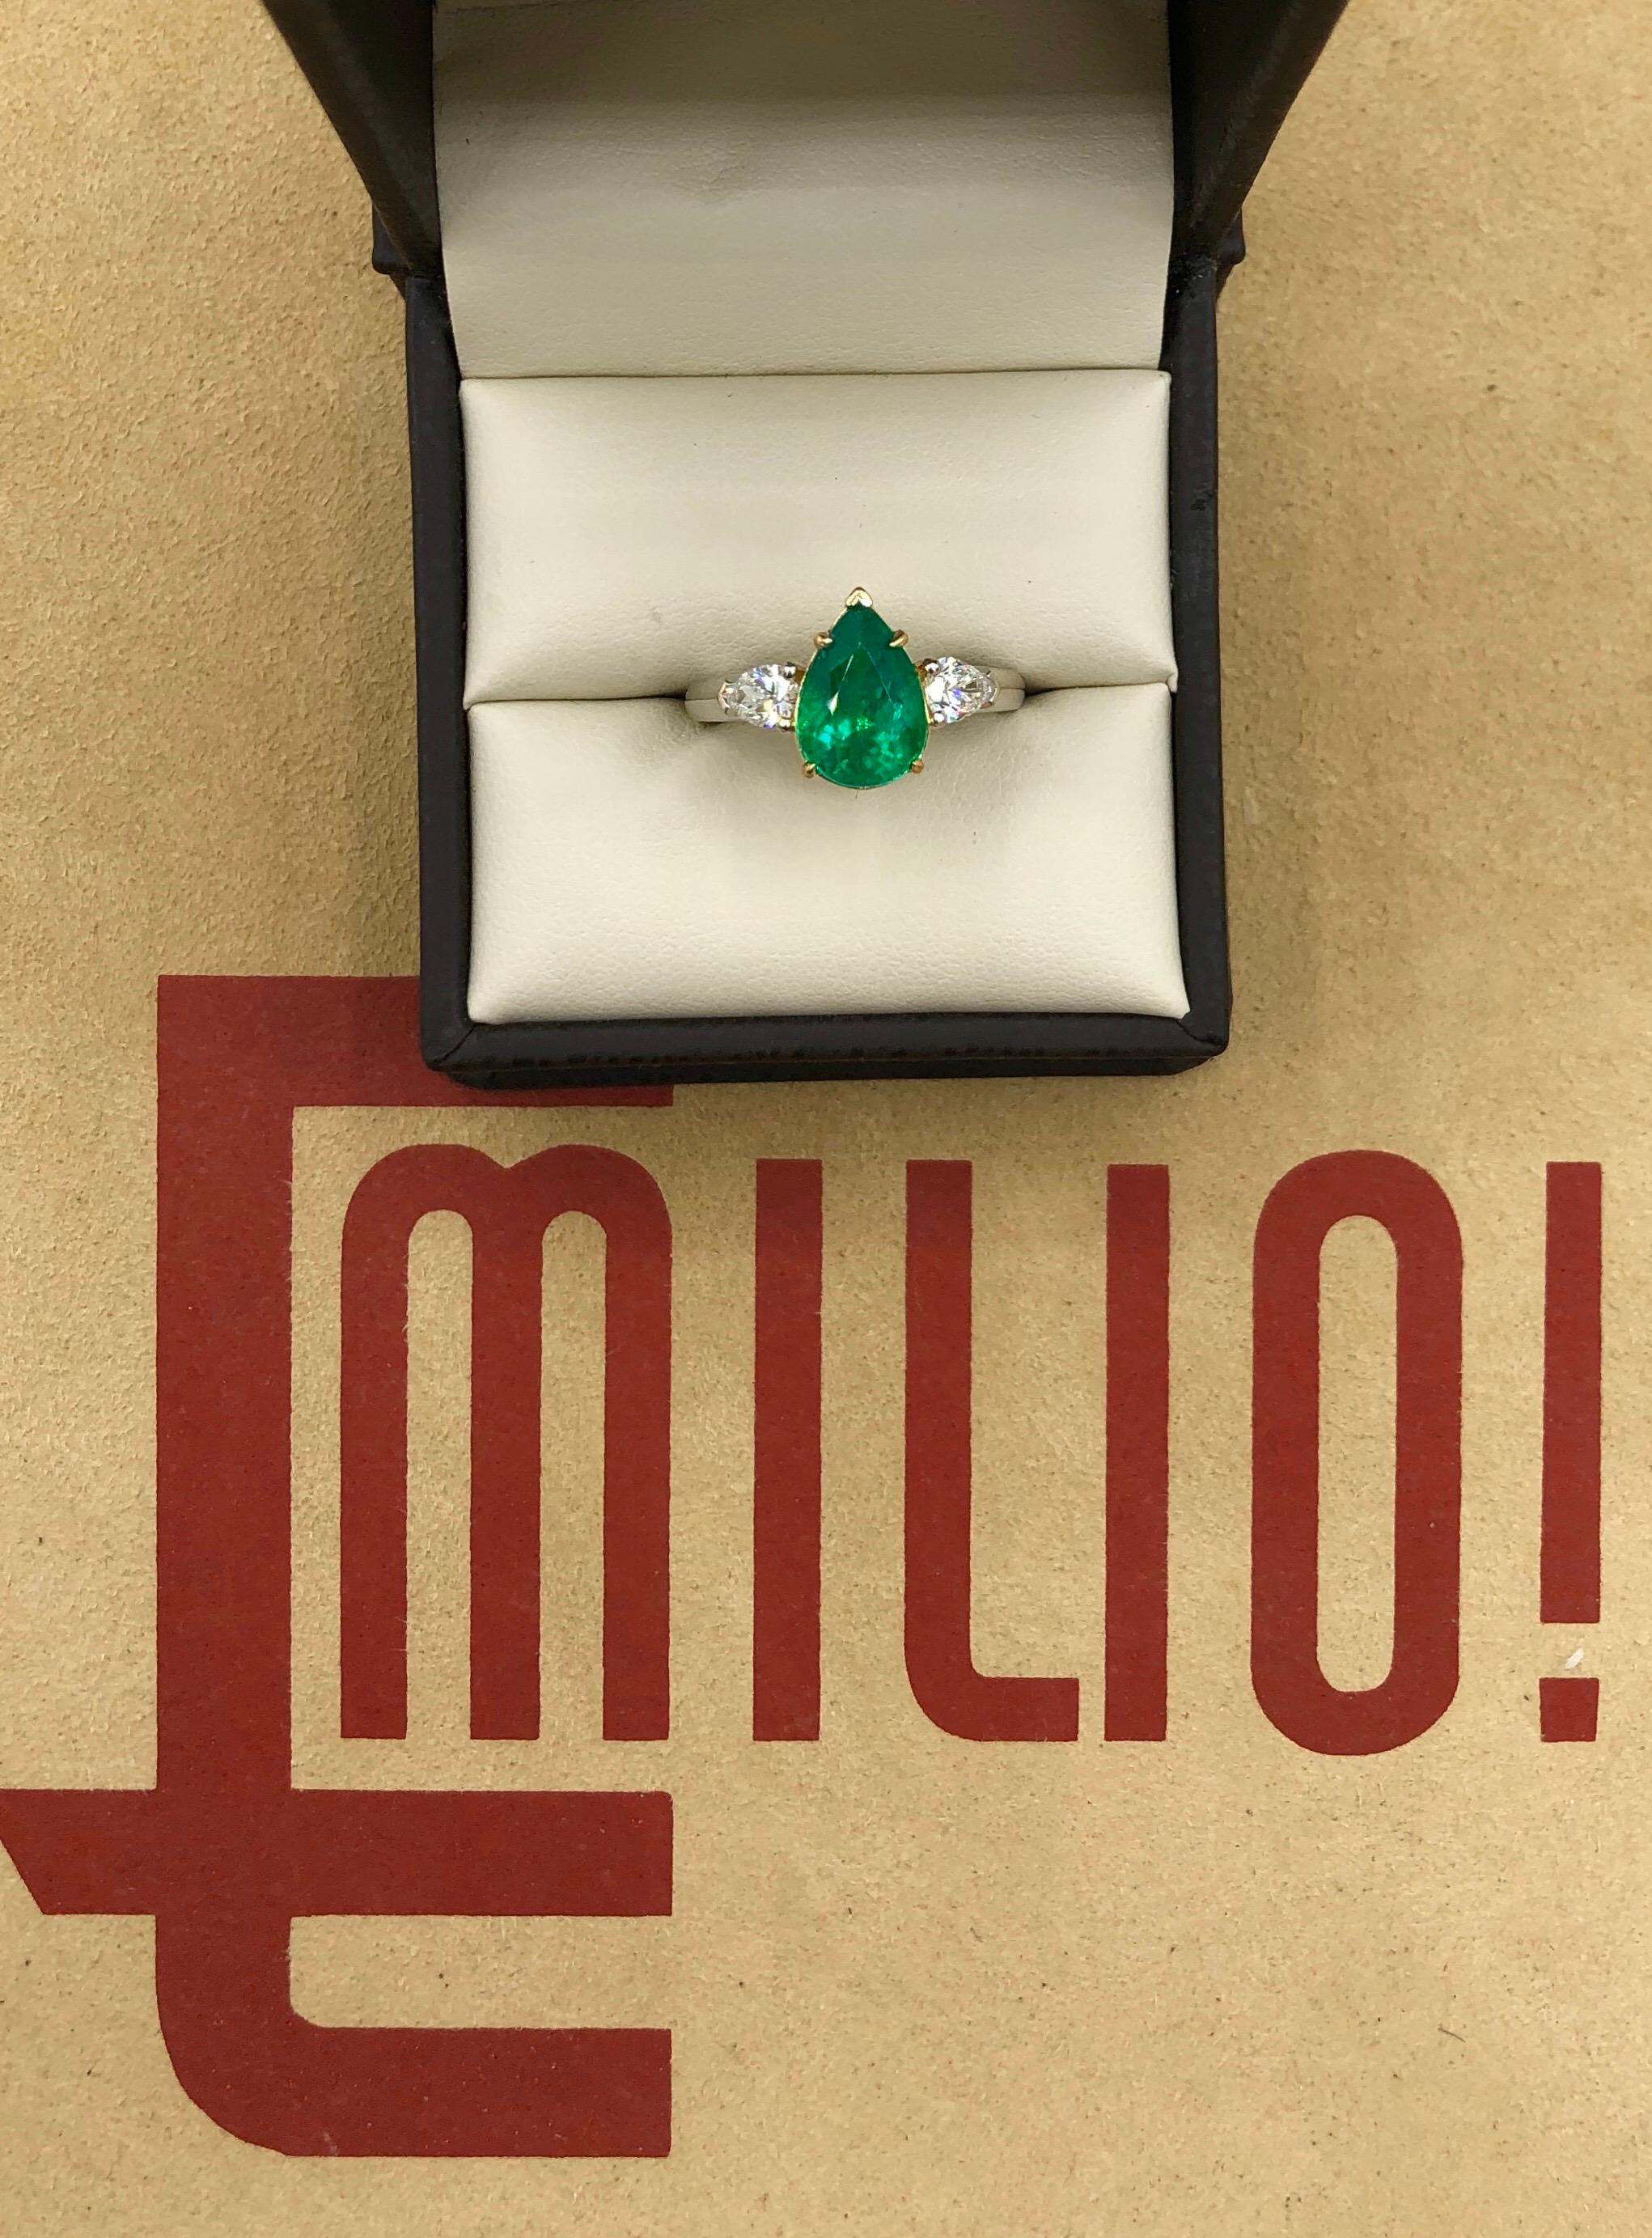 emerald ring design for little finger